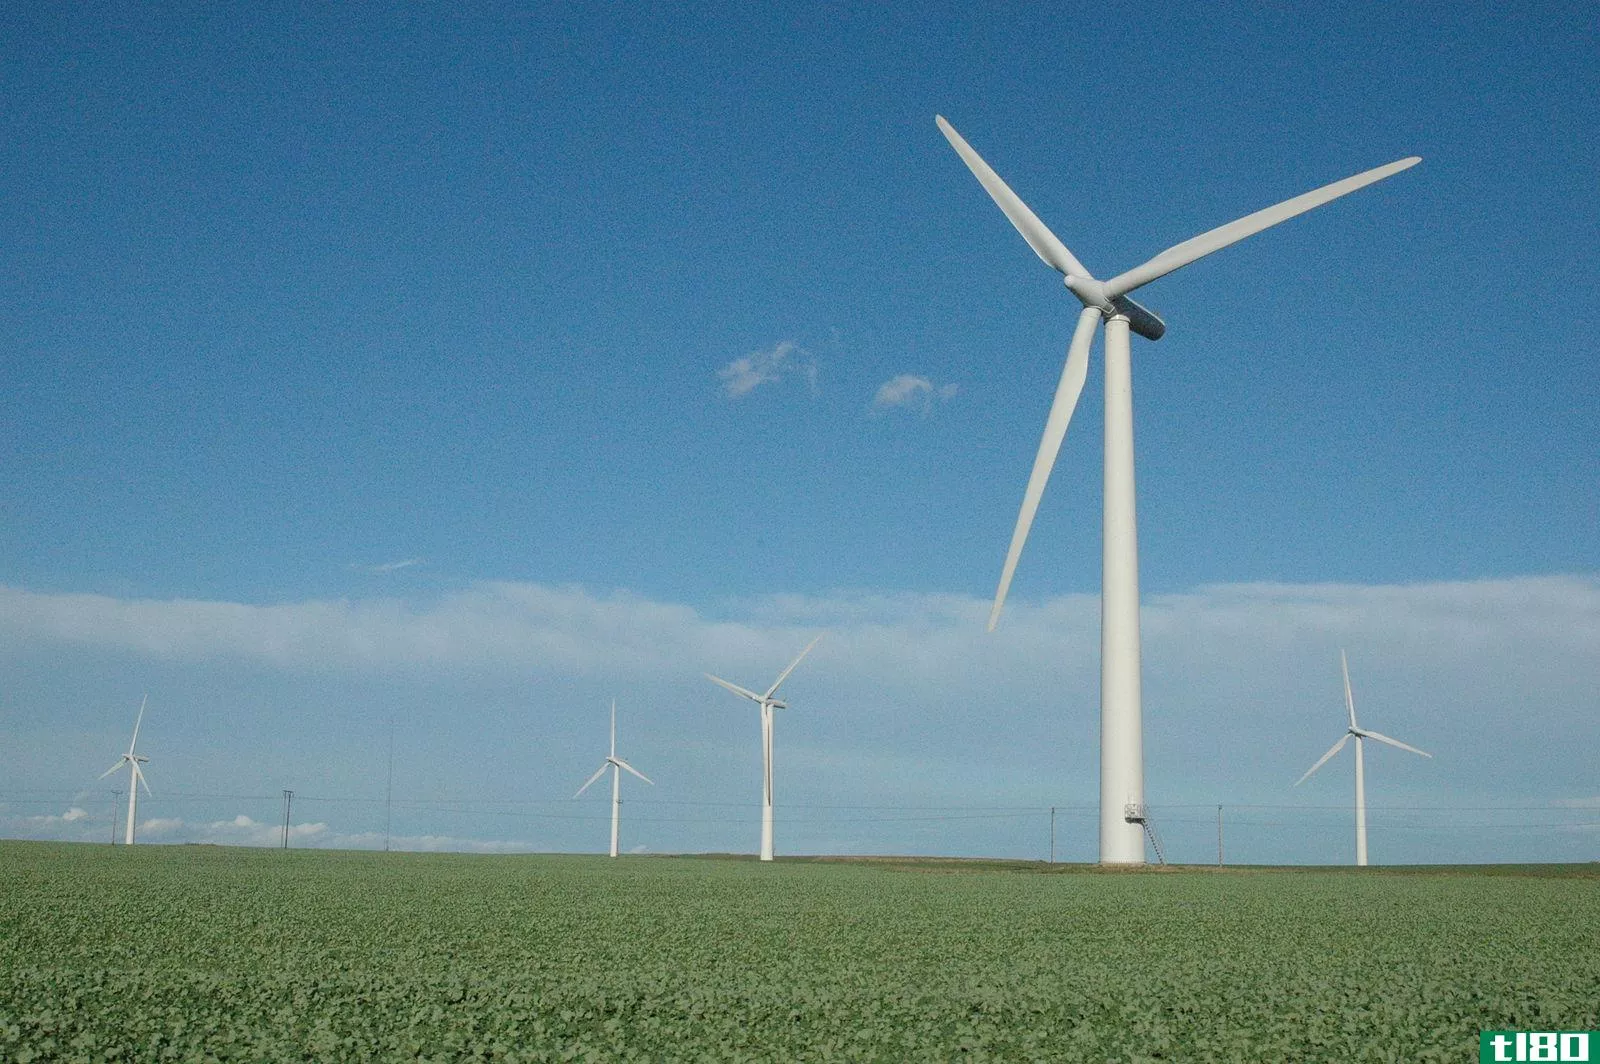 风车(windmill)和风力涡轮机(wind turbine)的区别